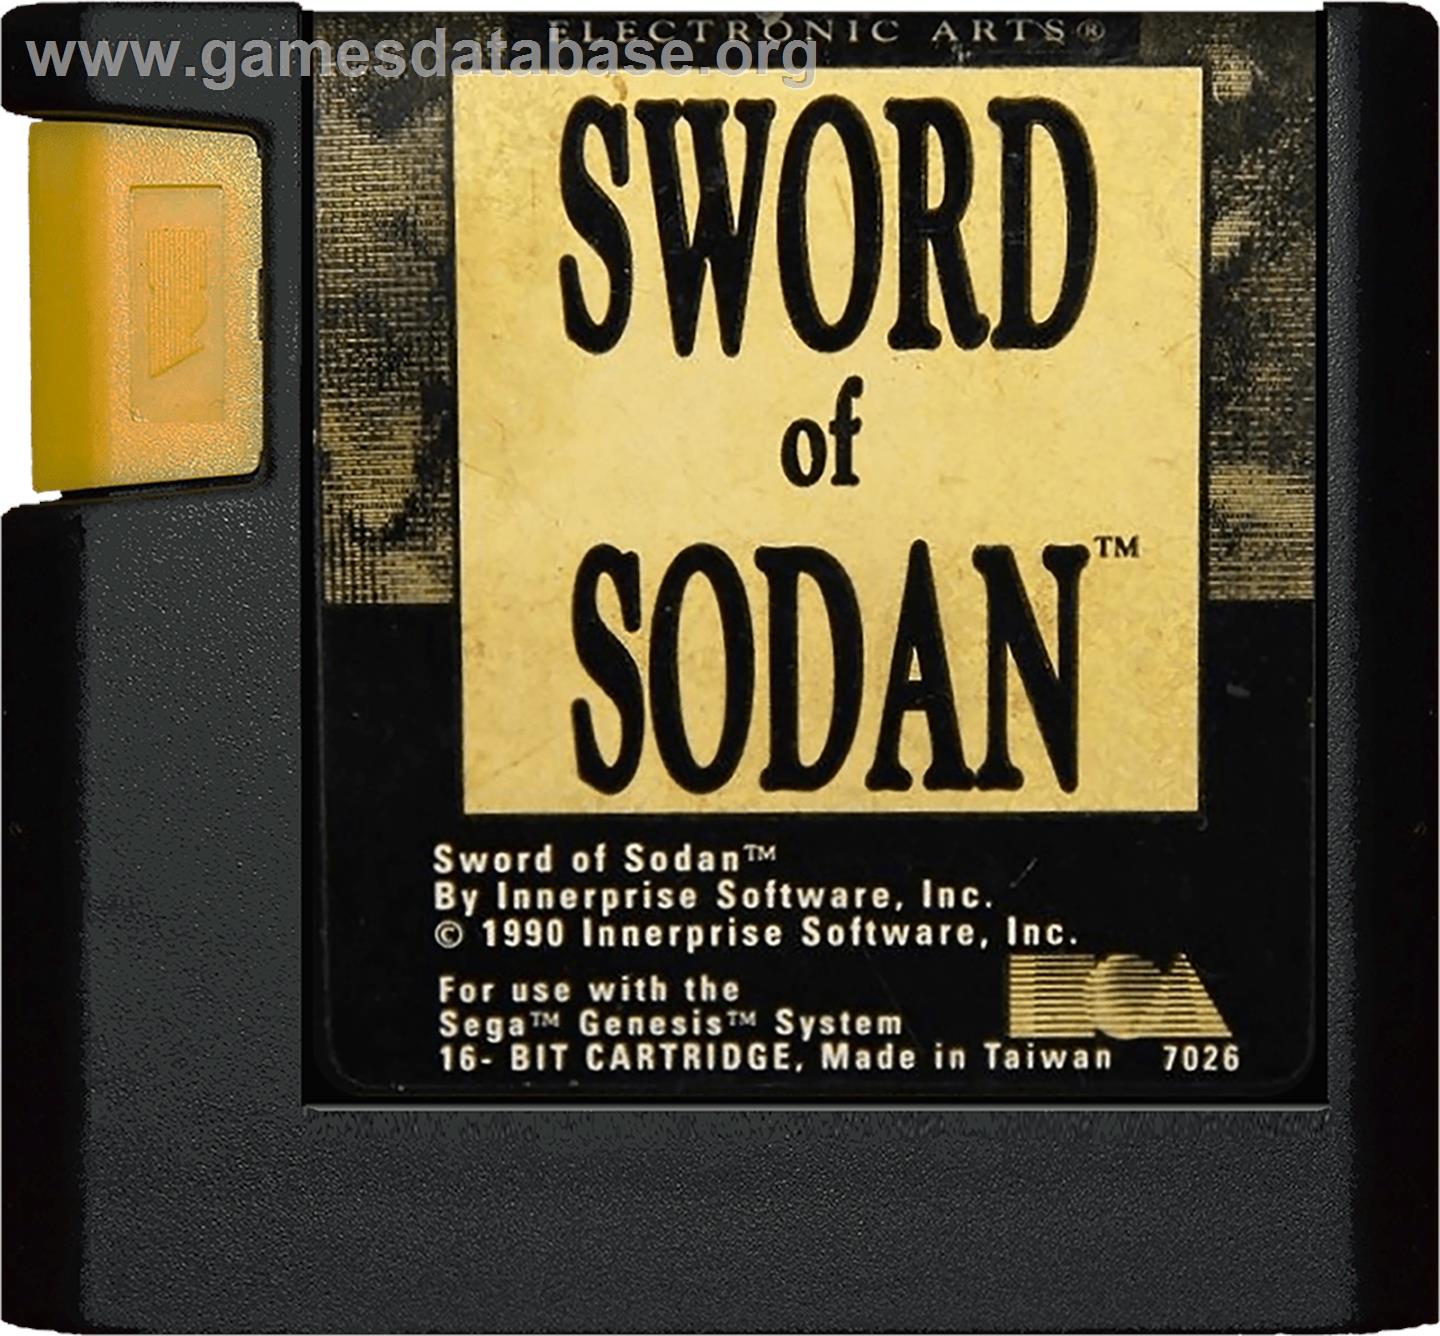 Sword of Sodan - Sega Genesis - Artwork - Cartridge